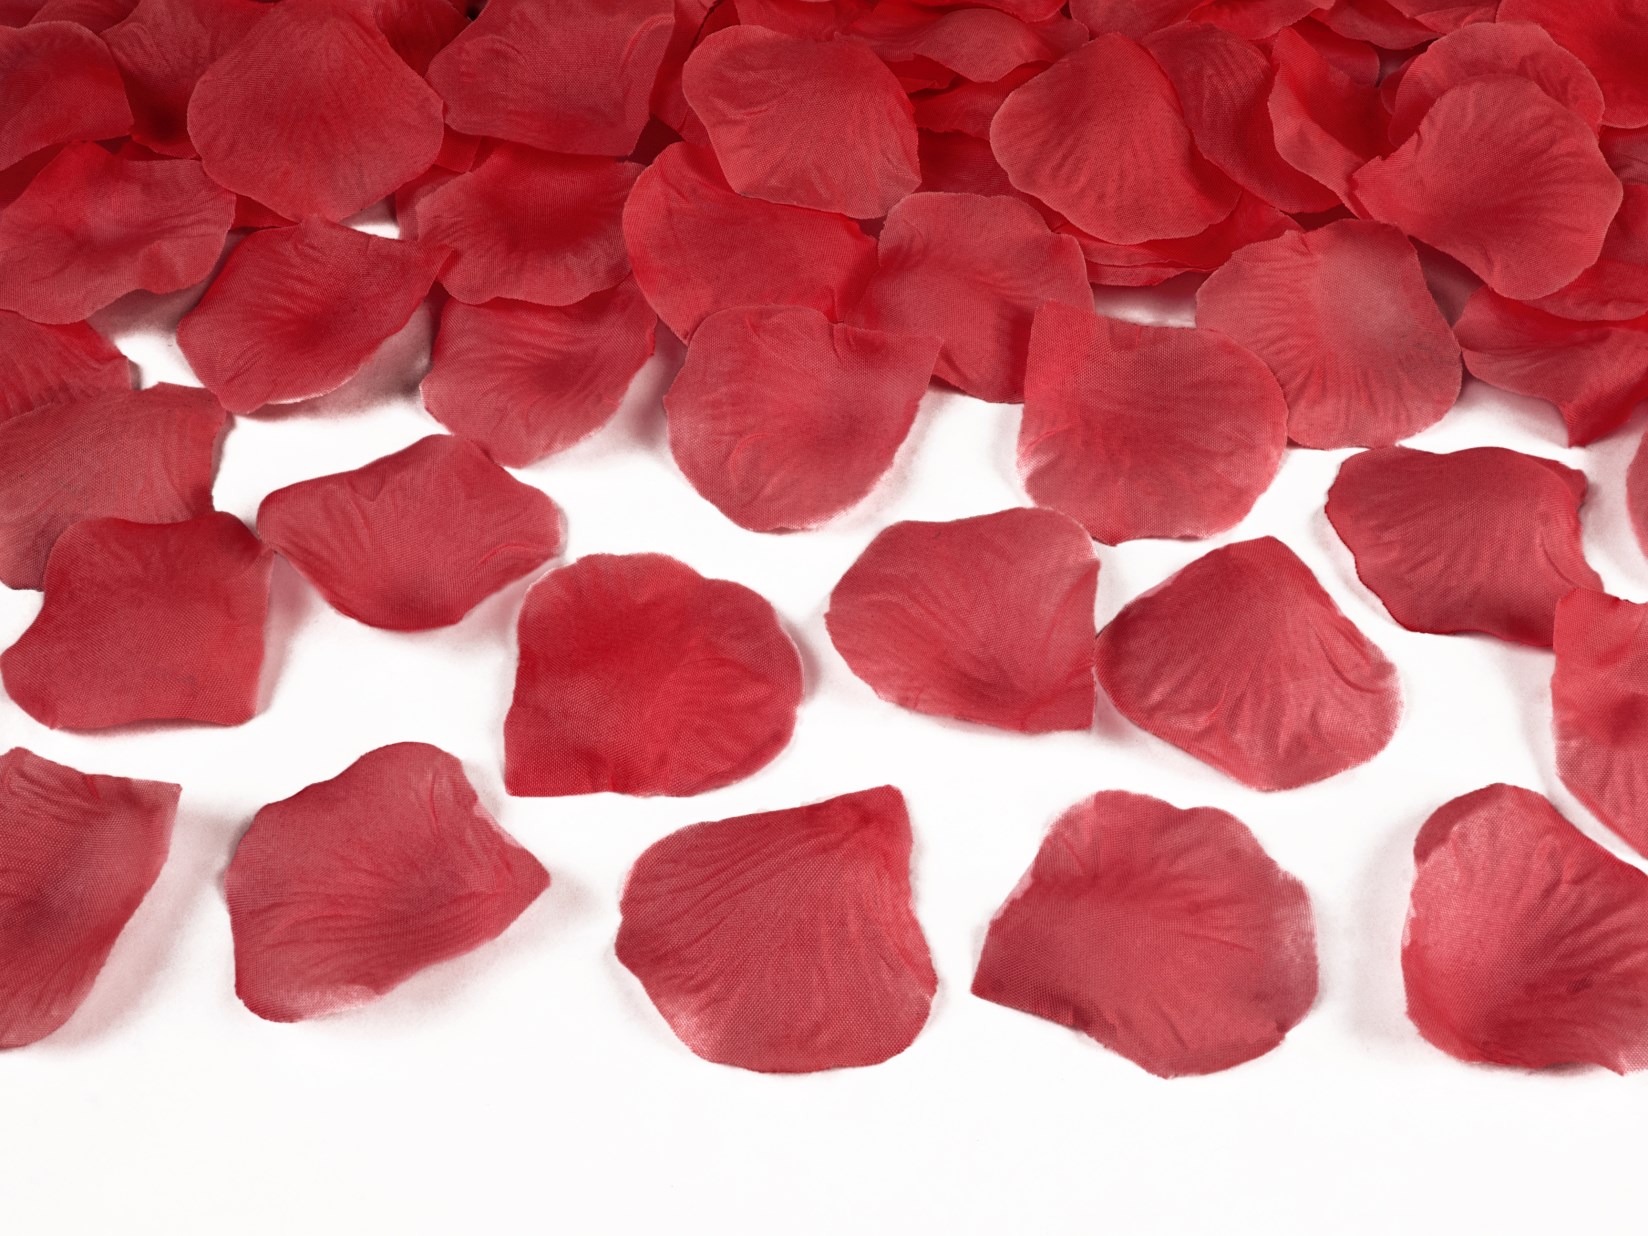 Υφασμάτινα Κόκκινα Ροδοπέταλα – 100 Τεμάχια